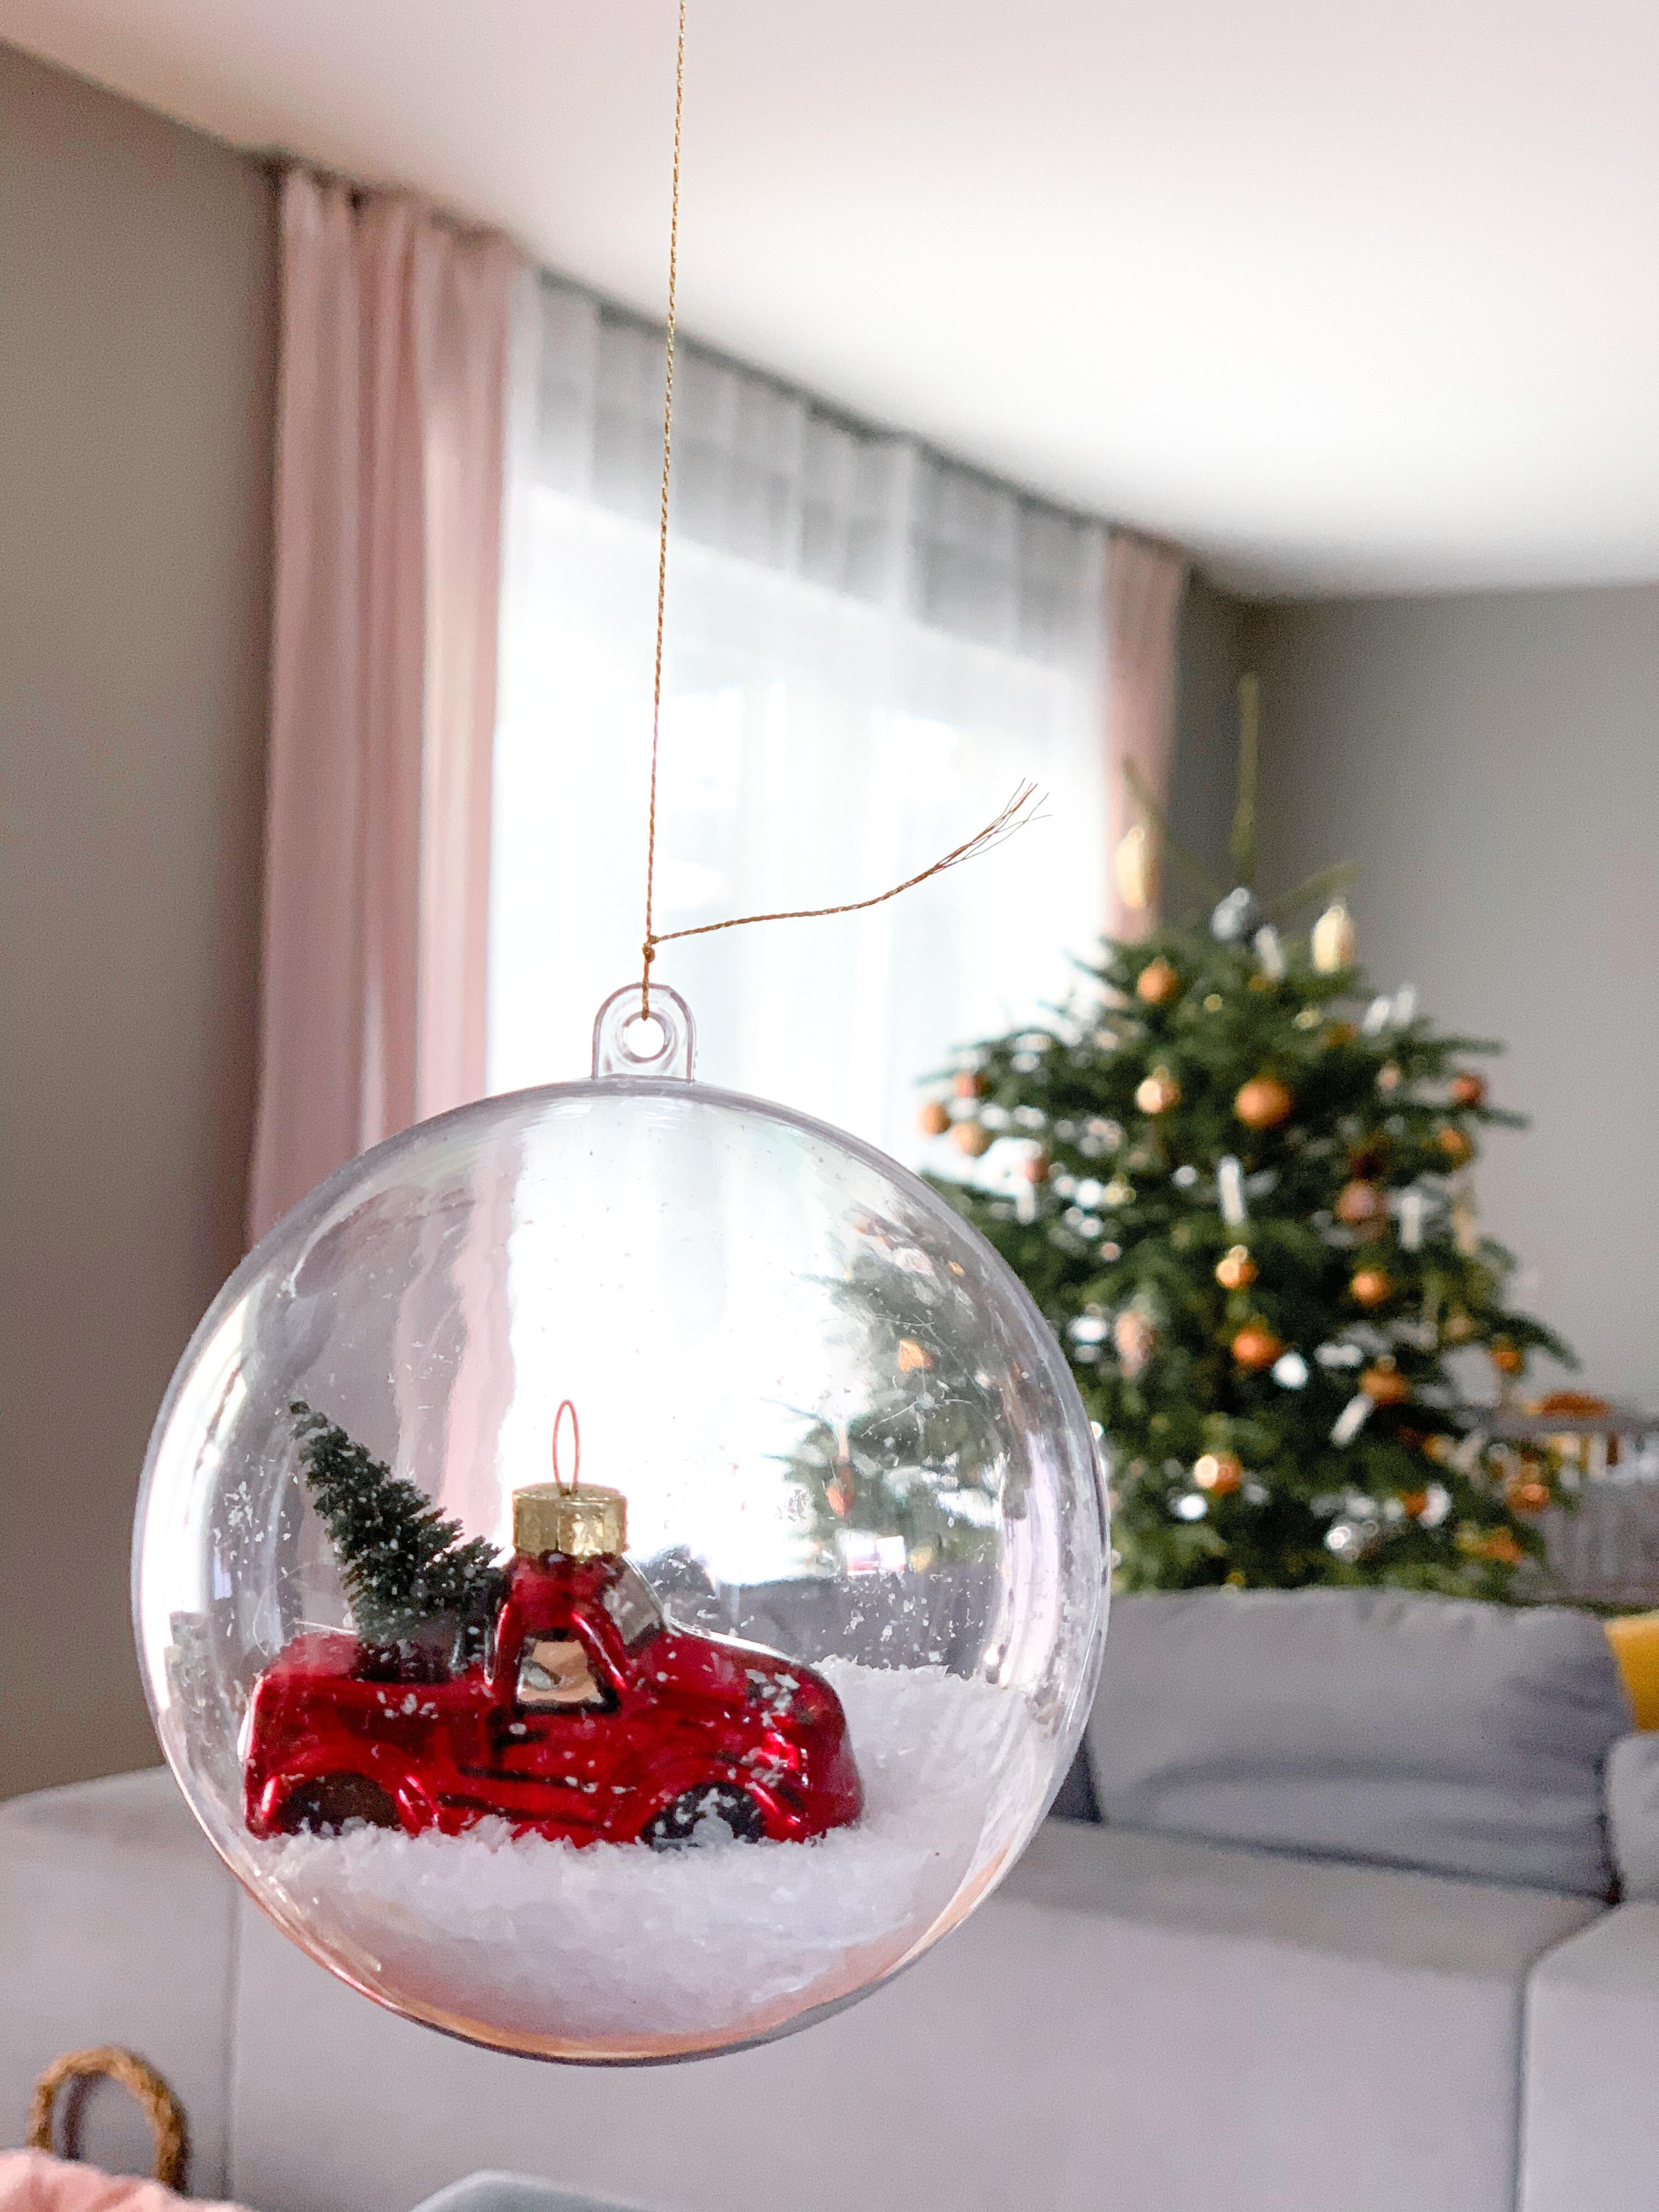 Hängende Tischdeko #weihnachten #christbaumkugel #baumschmuck #deko #weihnachtsdeko #schnee